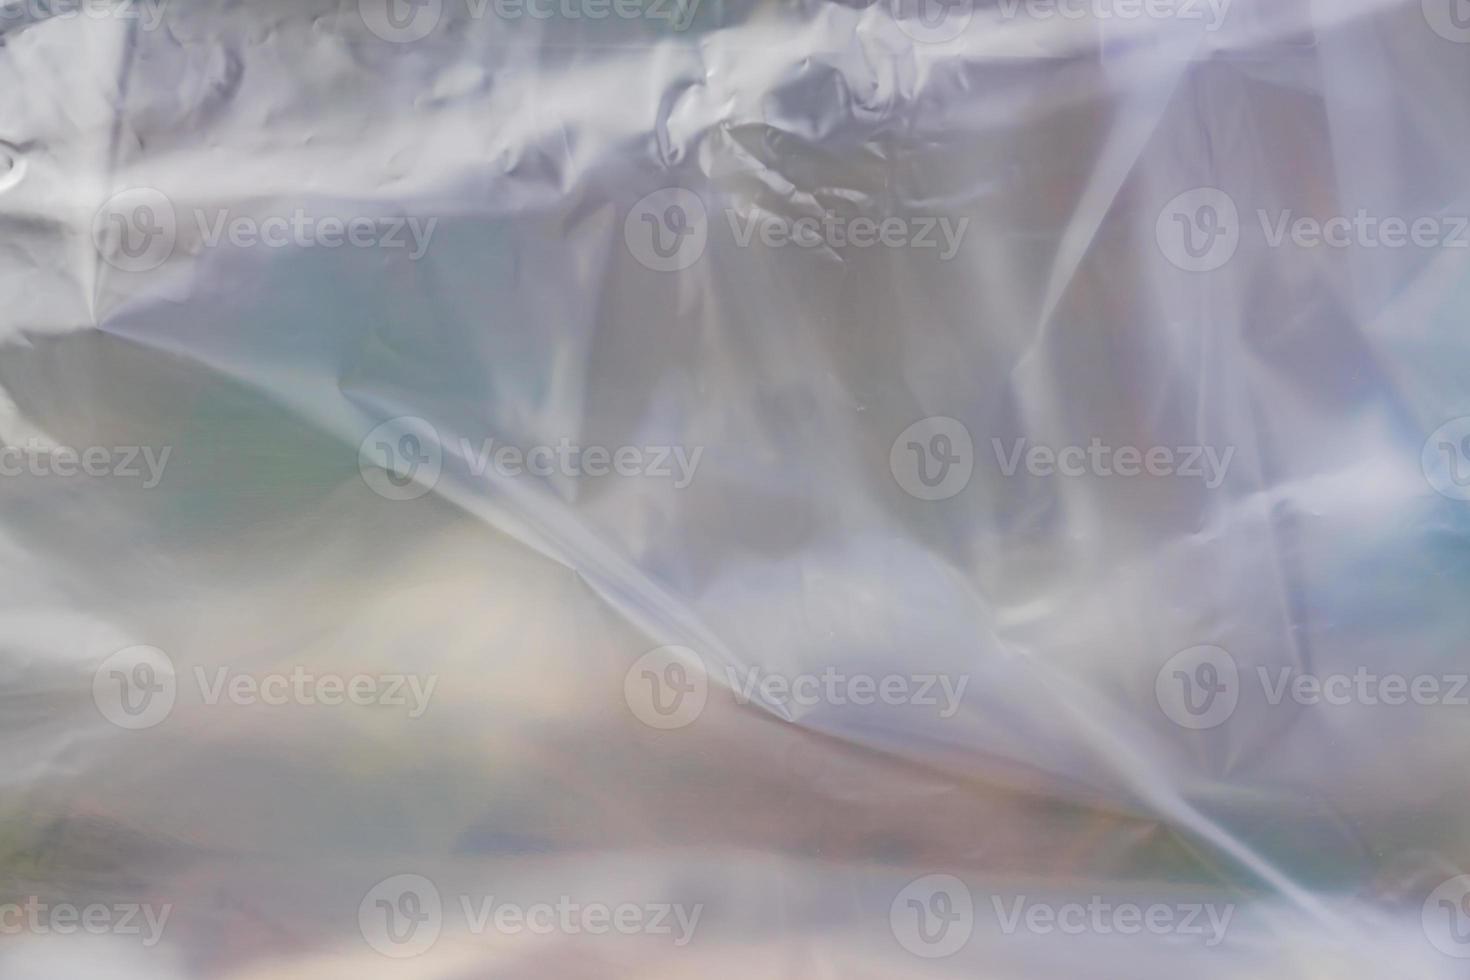 la texture de l'emballage en polyéthylène transparent. une surface recouverte de plusieurs couches de cellophane. photo